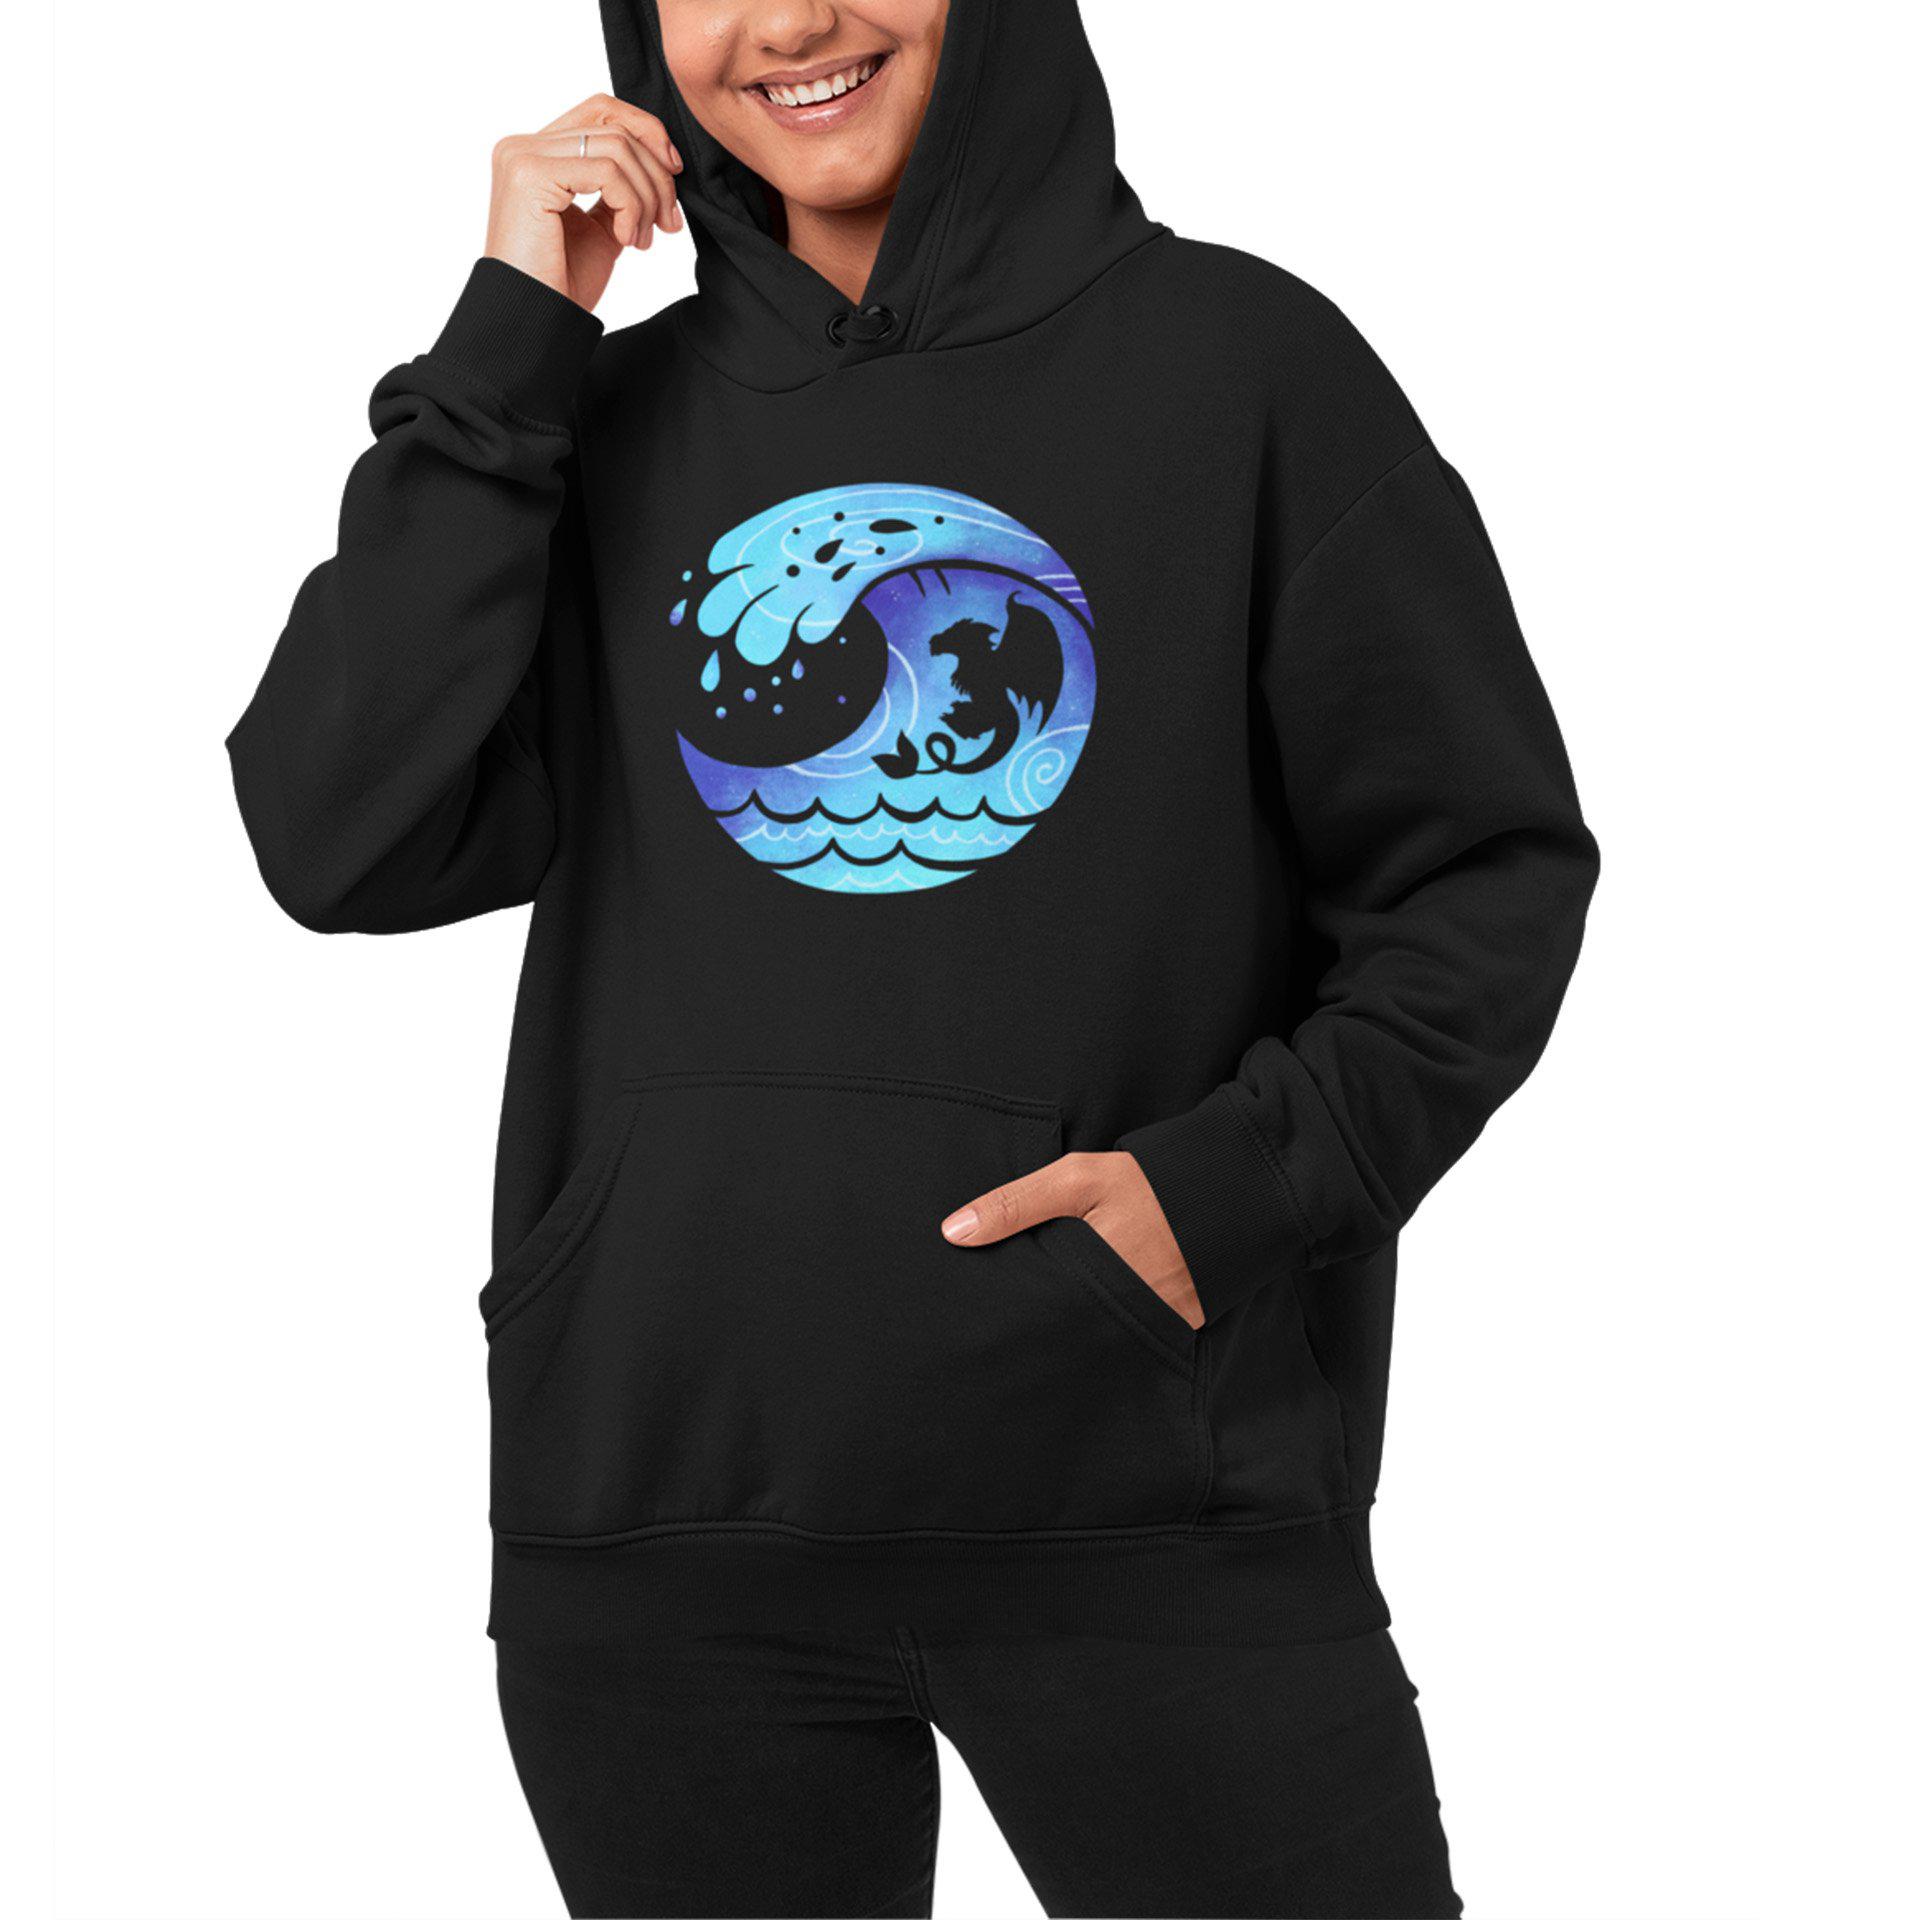 water spirit glacias hoodie black on model